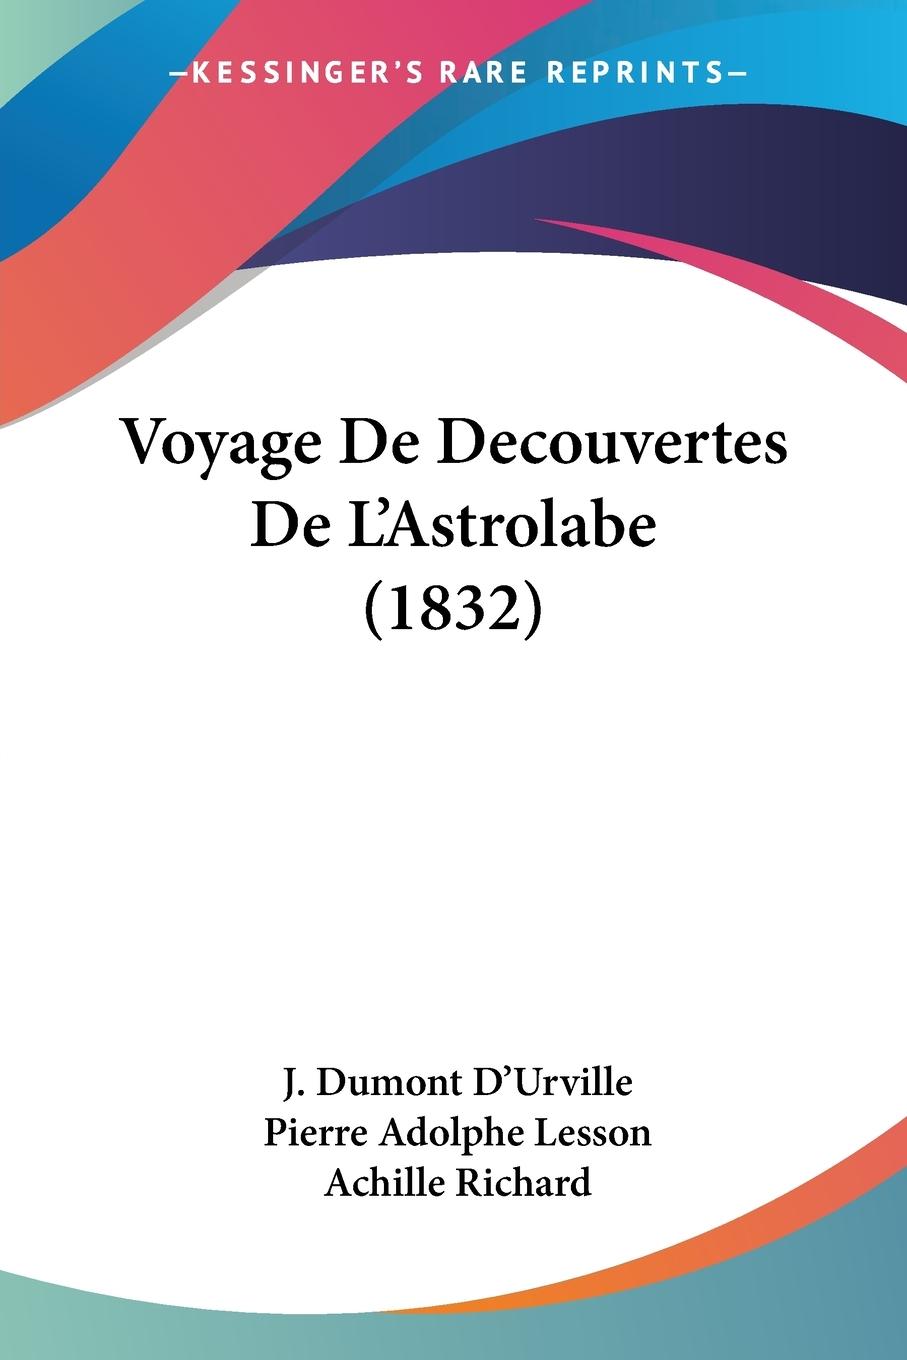 Voyage De Decouvertes De L Astrolabe (1832) - D Urville, J. Dumont Lesson, Pierre Adolphe Richard, Achille